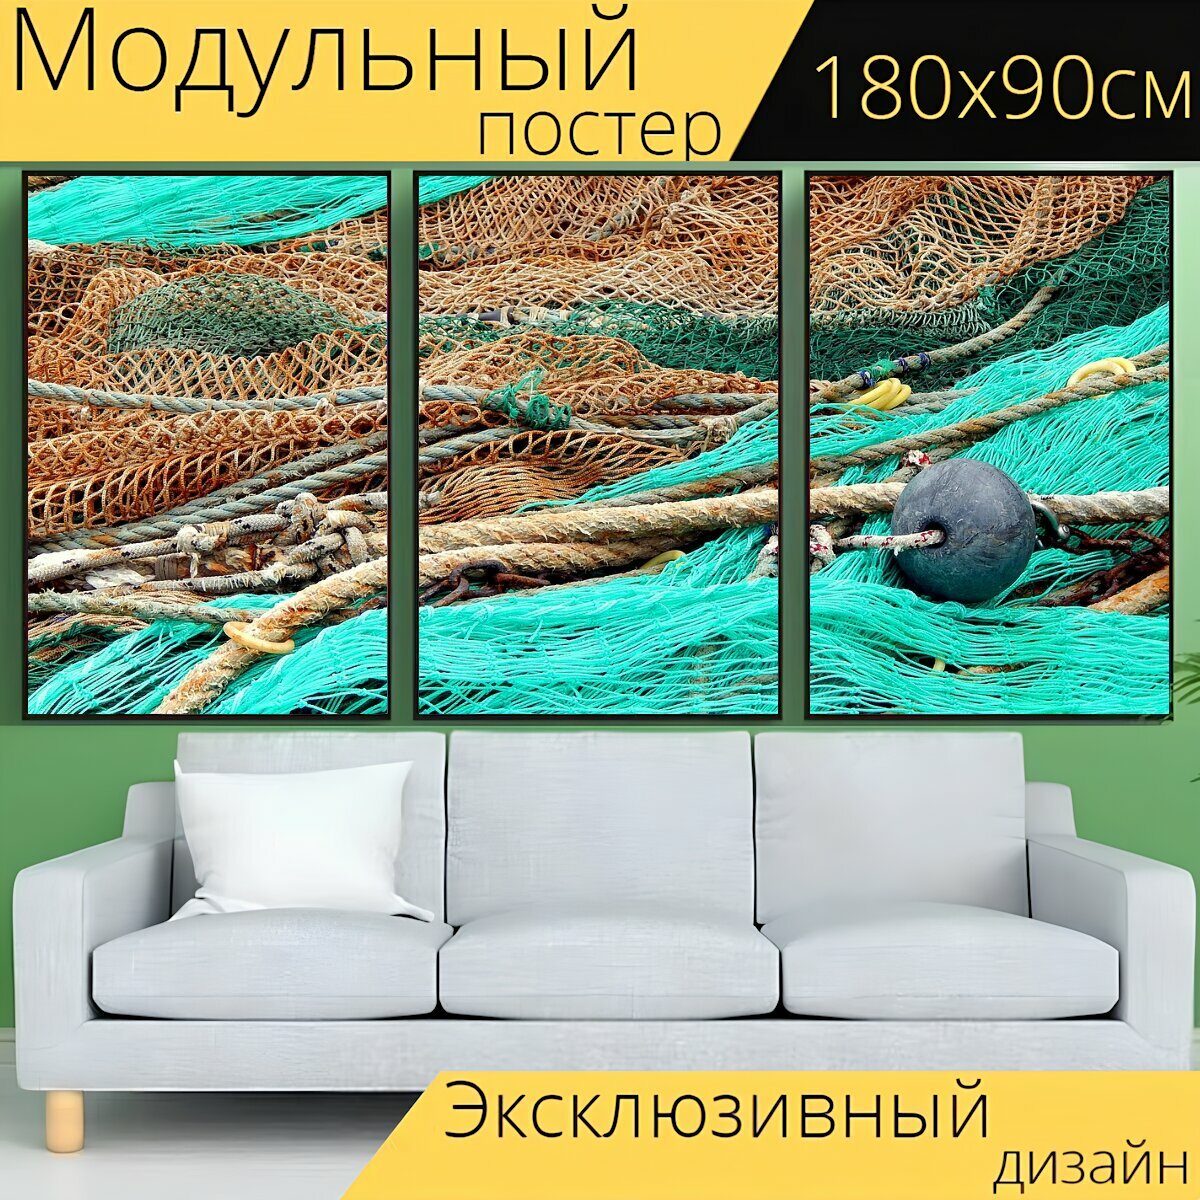 Модульный постер "Сеть, рыболовные сети, рыболовные снасти" 180 x 90 см. для интерьера